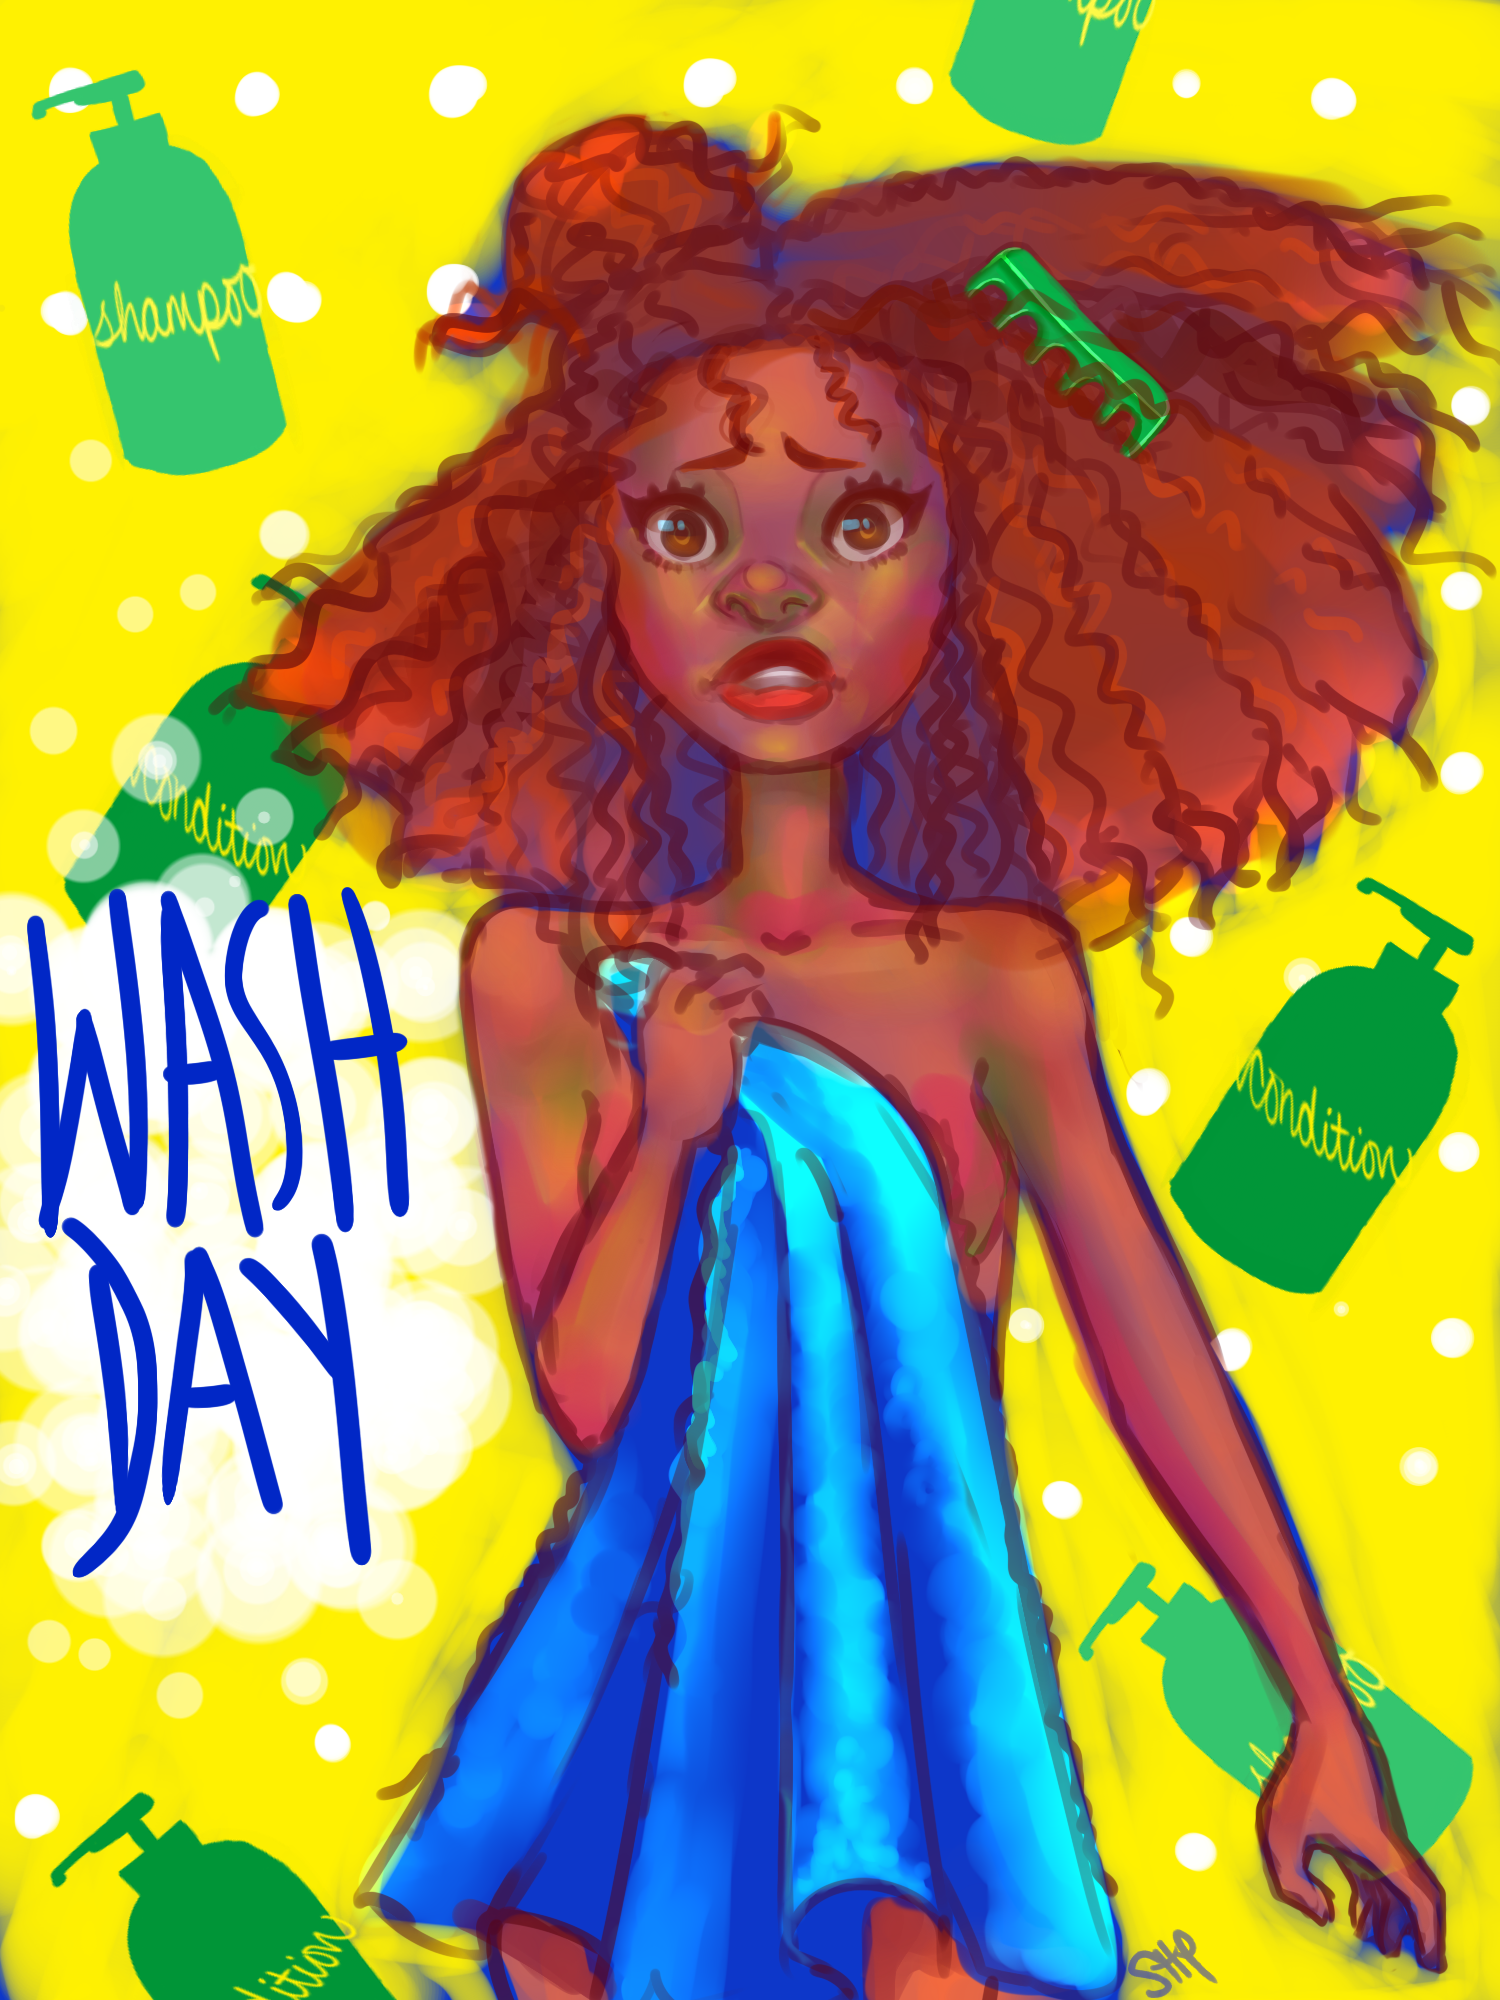 Wash Day (Natural Hair) by nanacoopa on DeviantArt